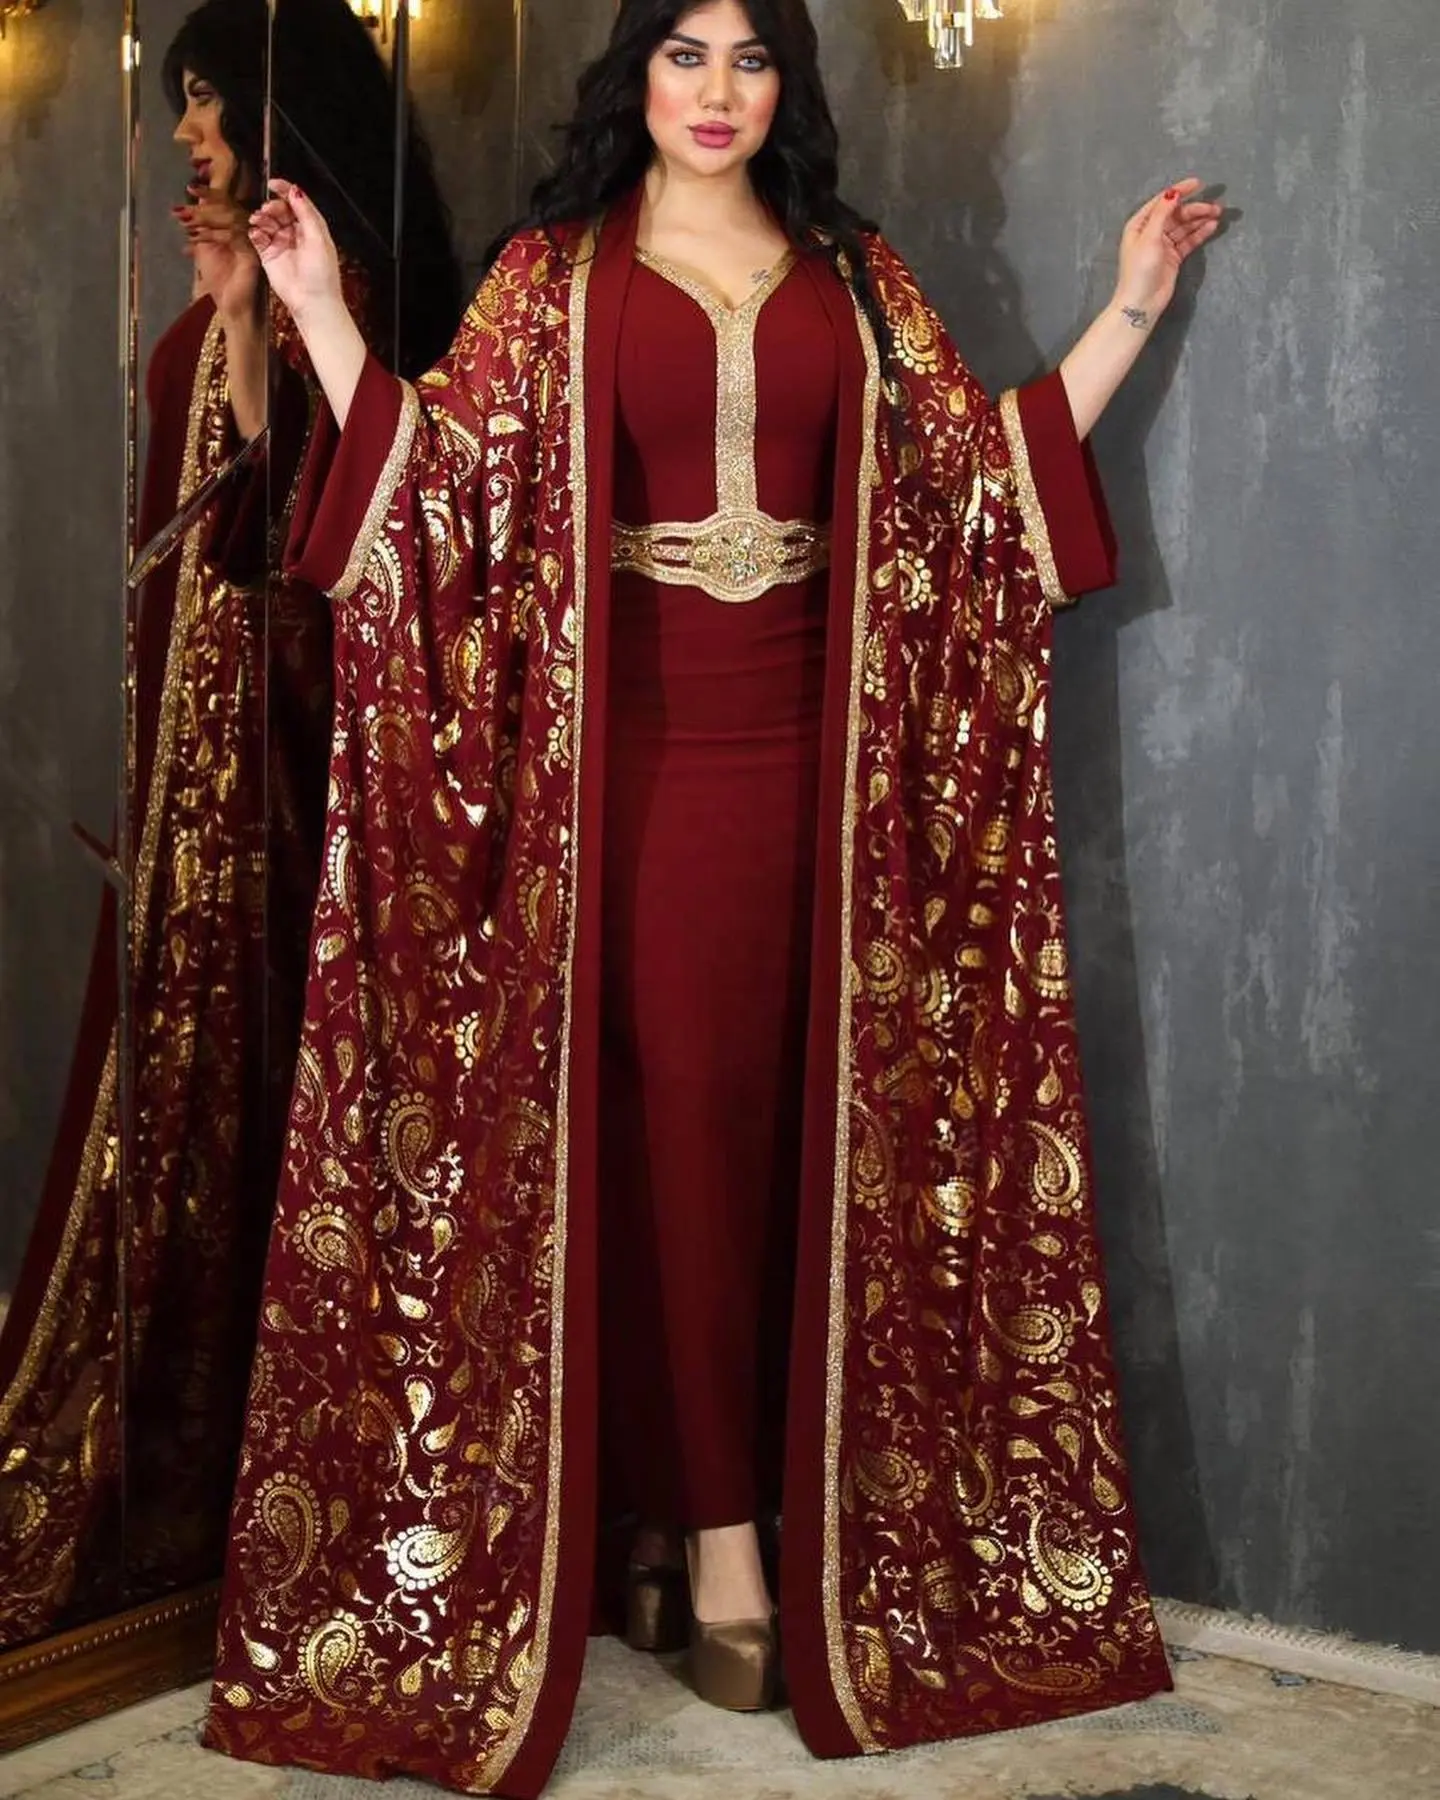 Lujo Abaya Medio Oriente musulmán Abaya mujer diamante rebordear dos piezas Abaya conjuntos cárdigan abierto elegante vestido de noche africano